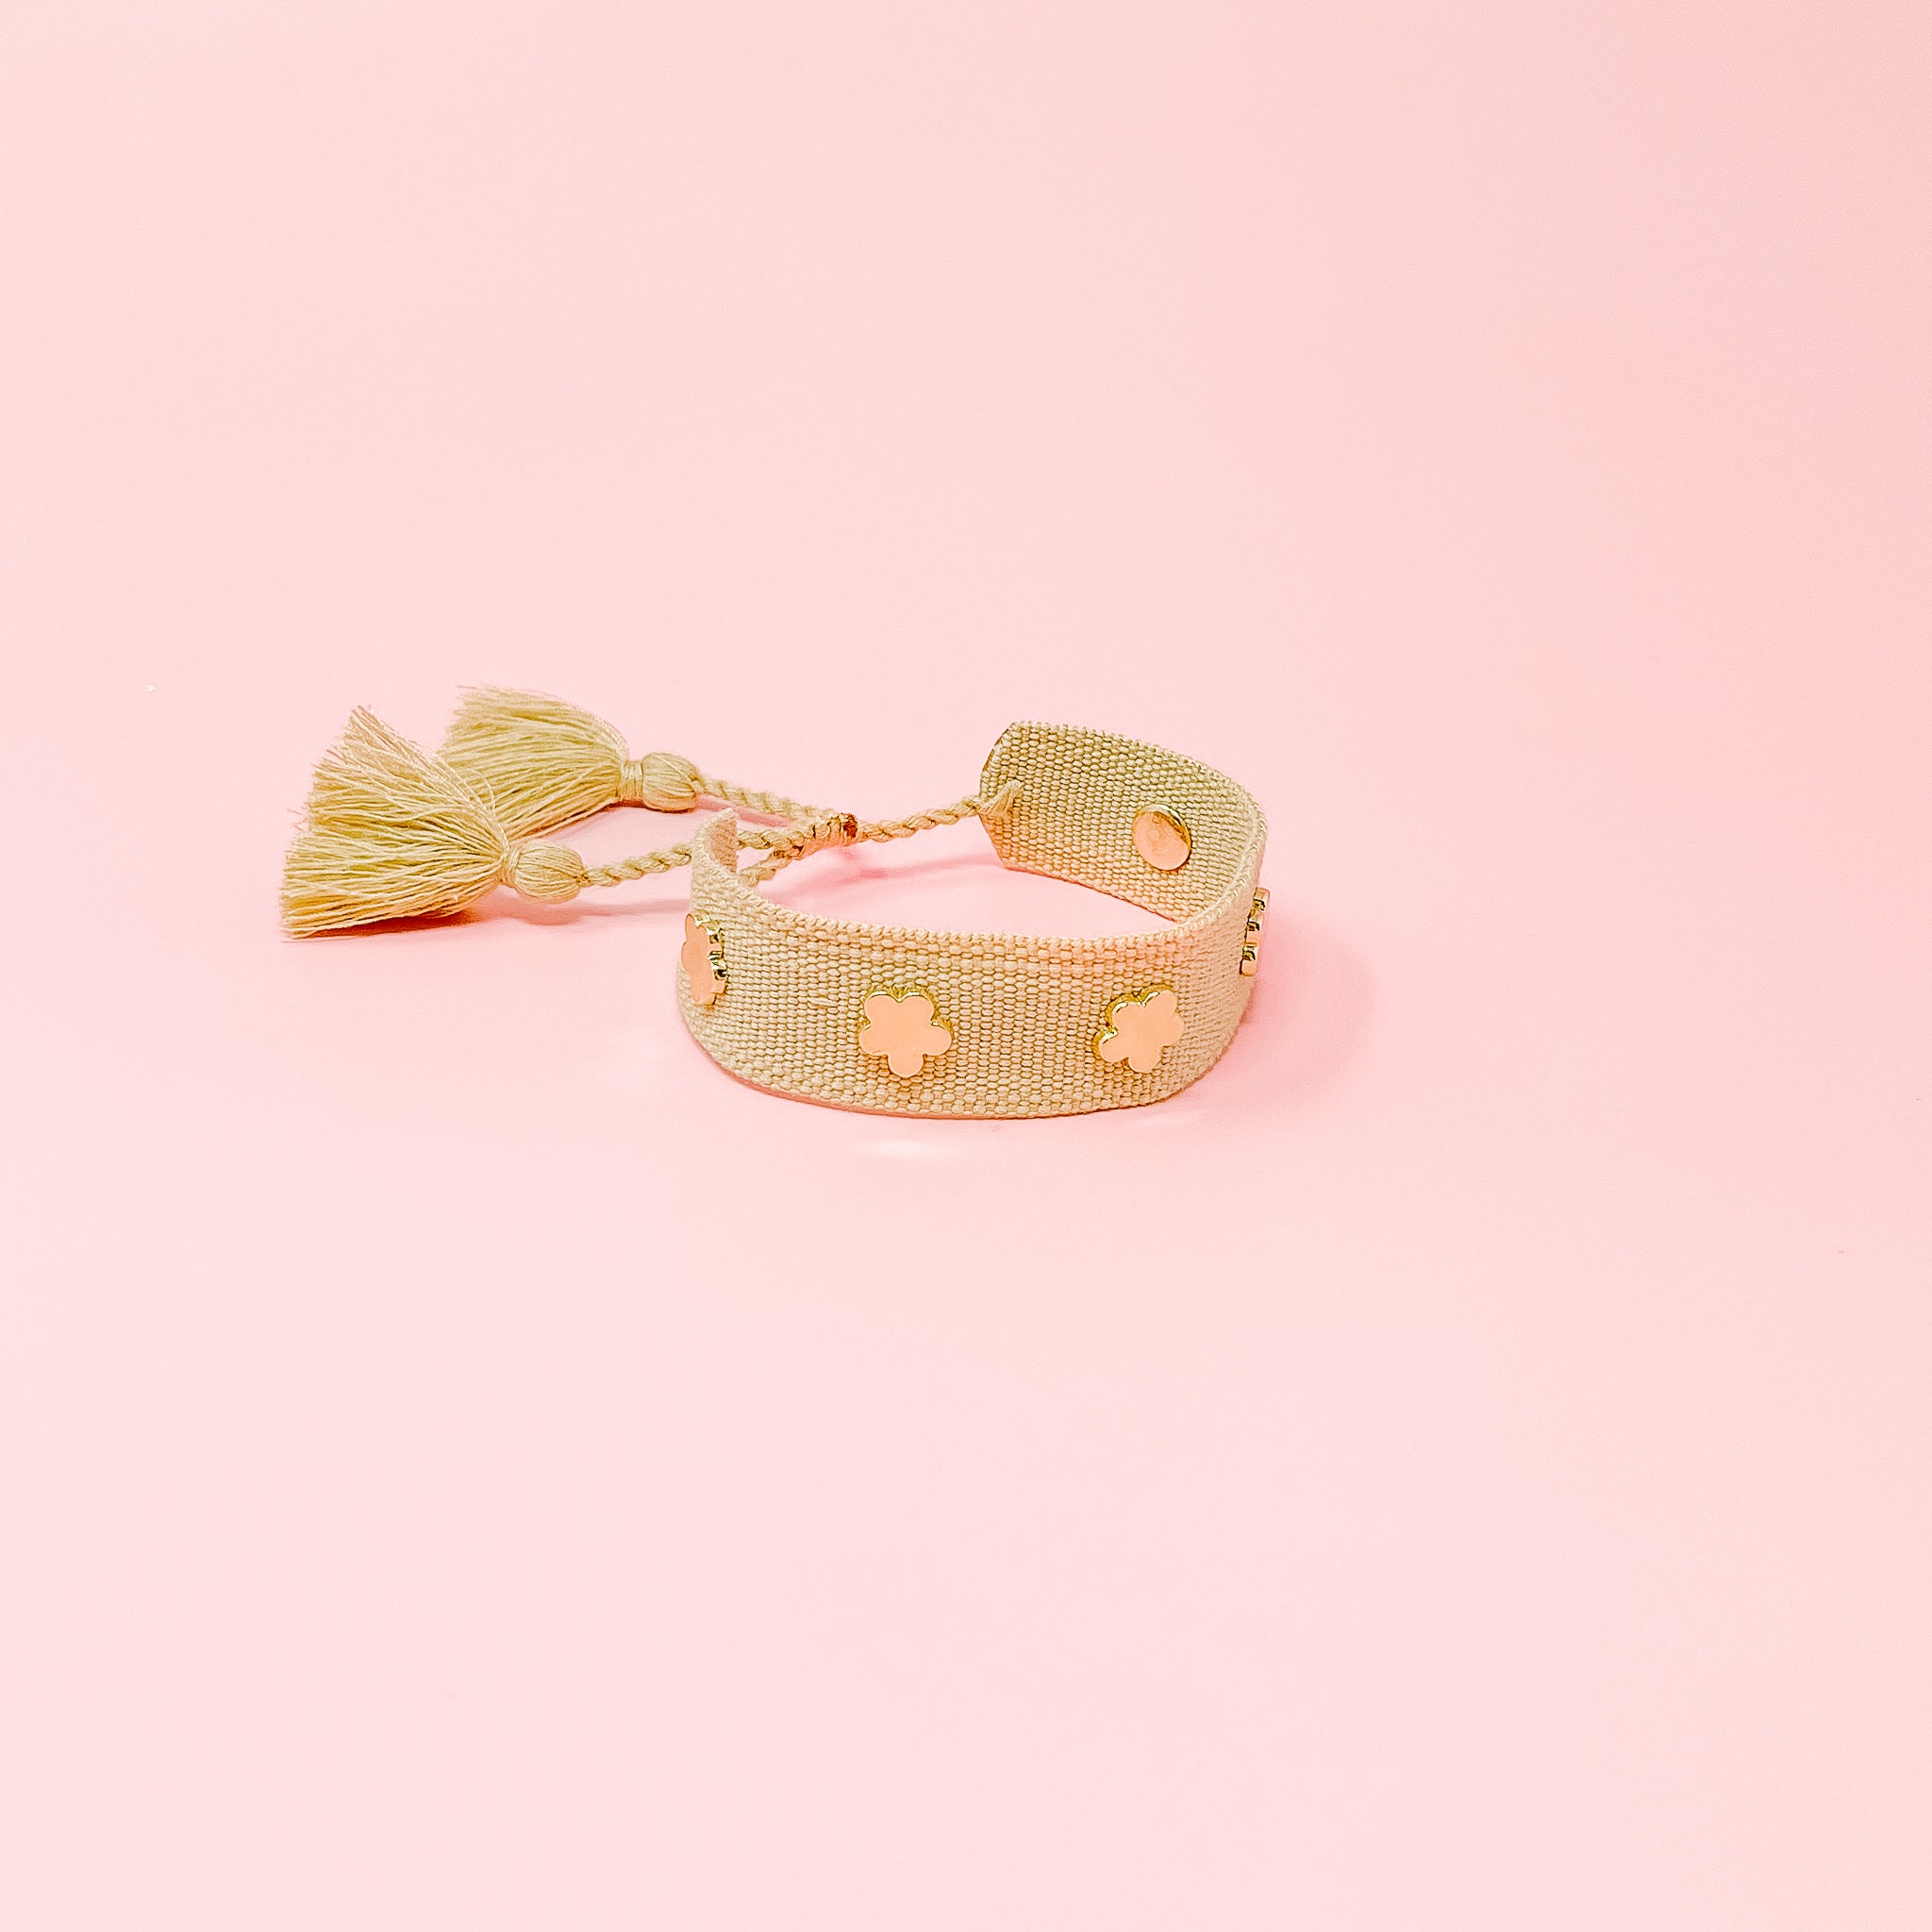 Adjustable Woven Floral Stacker Bracelets